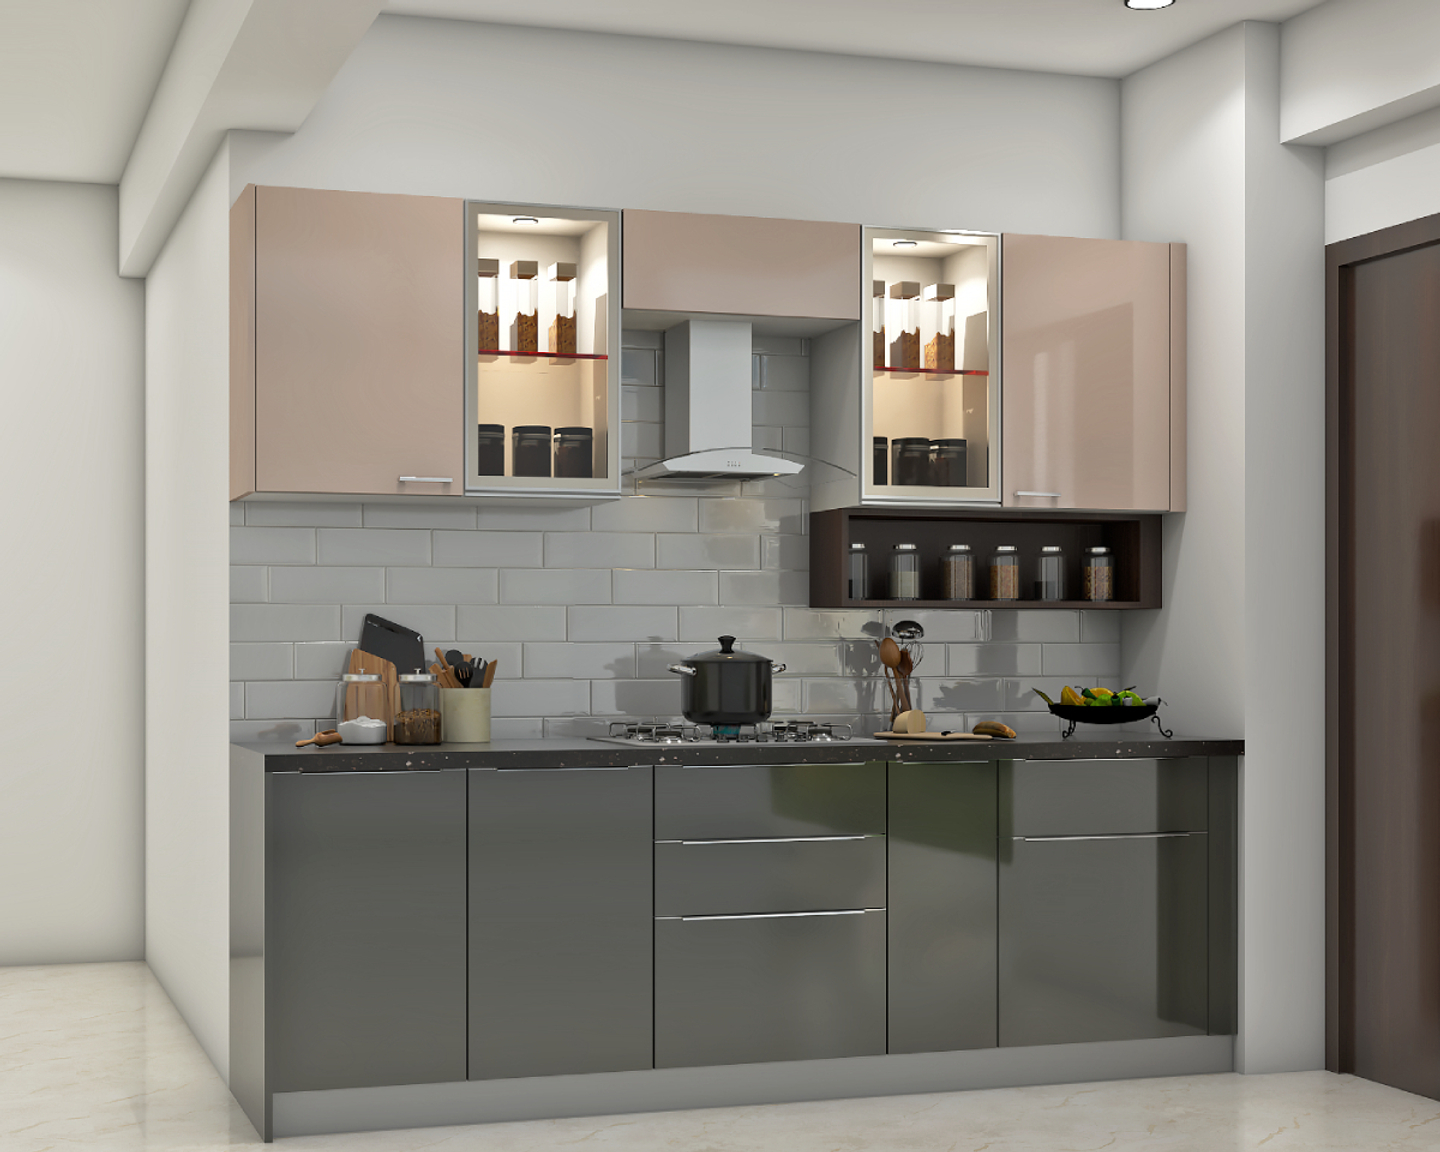 Green And Beige Kitchen Design - Livspace